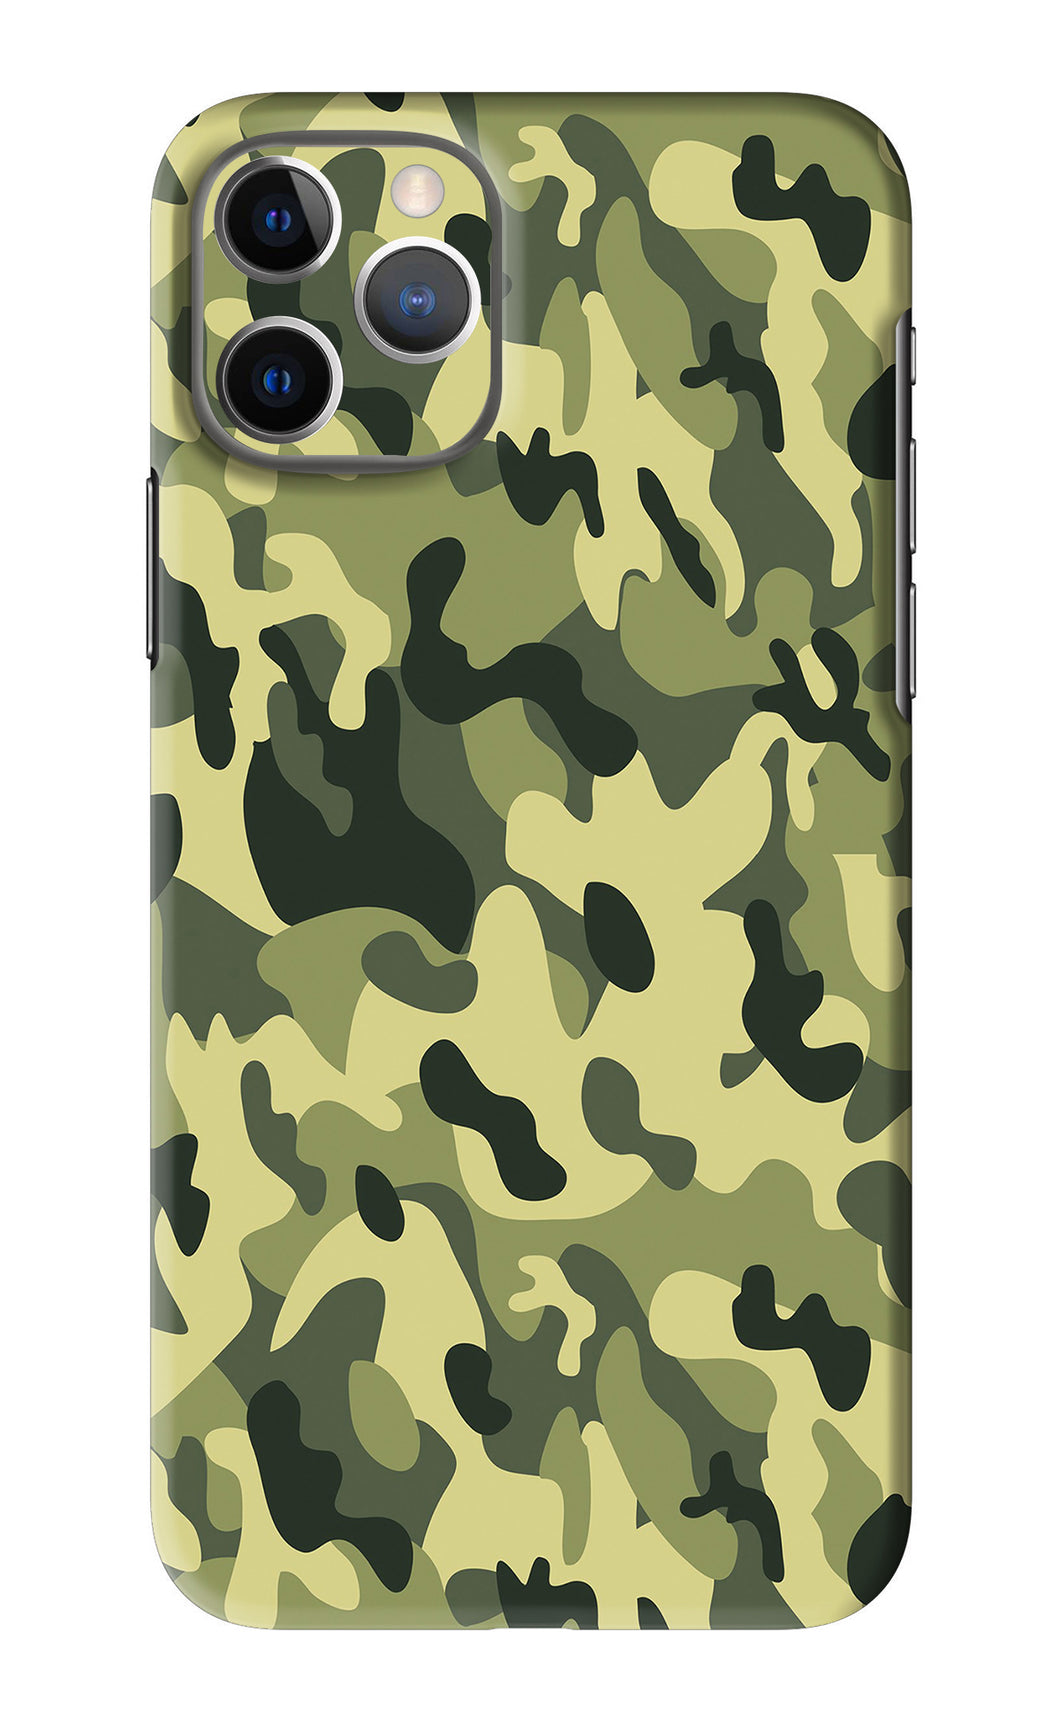 Camouflage iPhone 11 Pro Back Skin Wrap